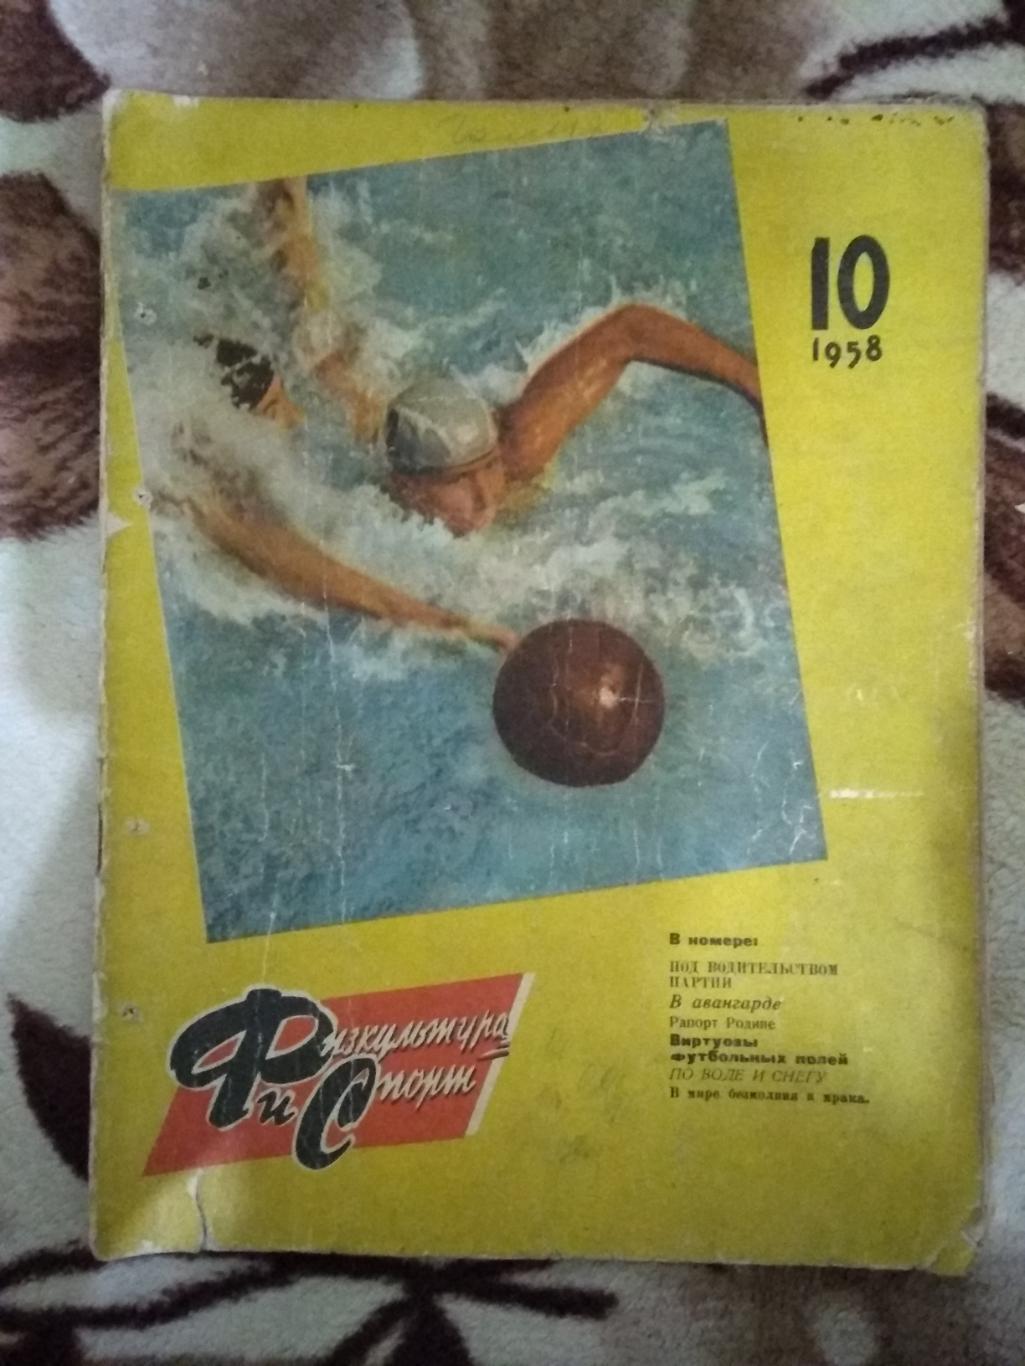 Журнал.Физкультура и спорт № 10 1958 г. (ФиС).